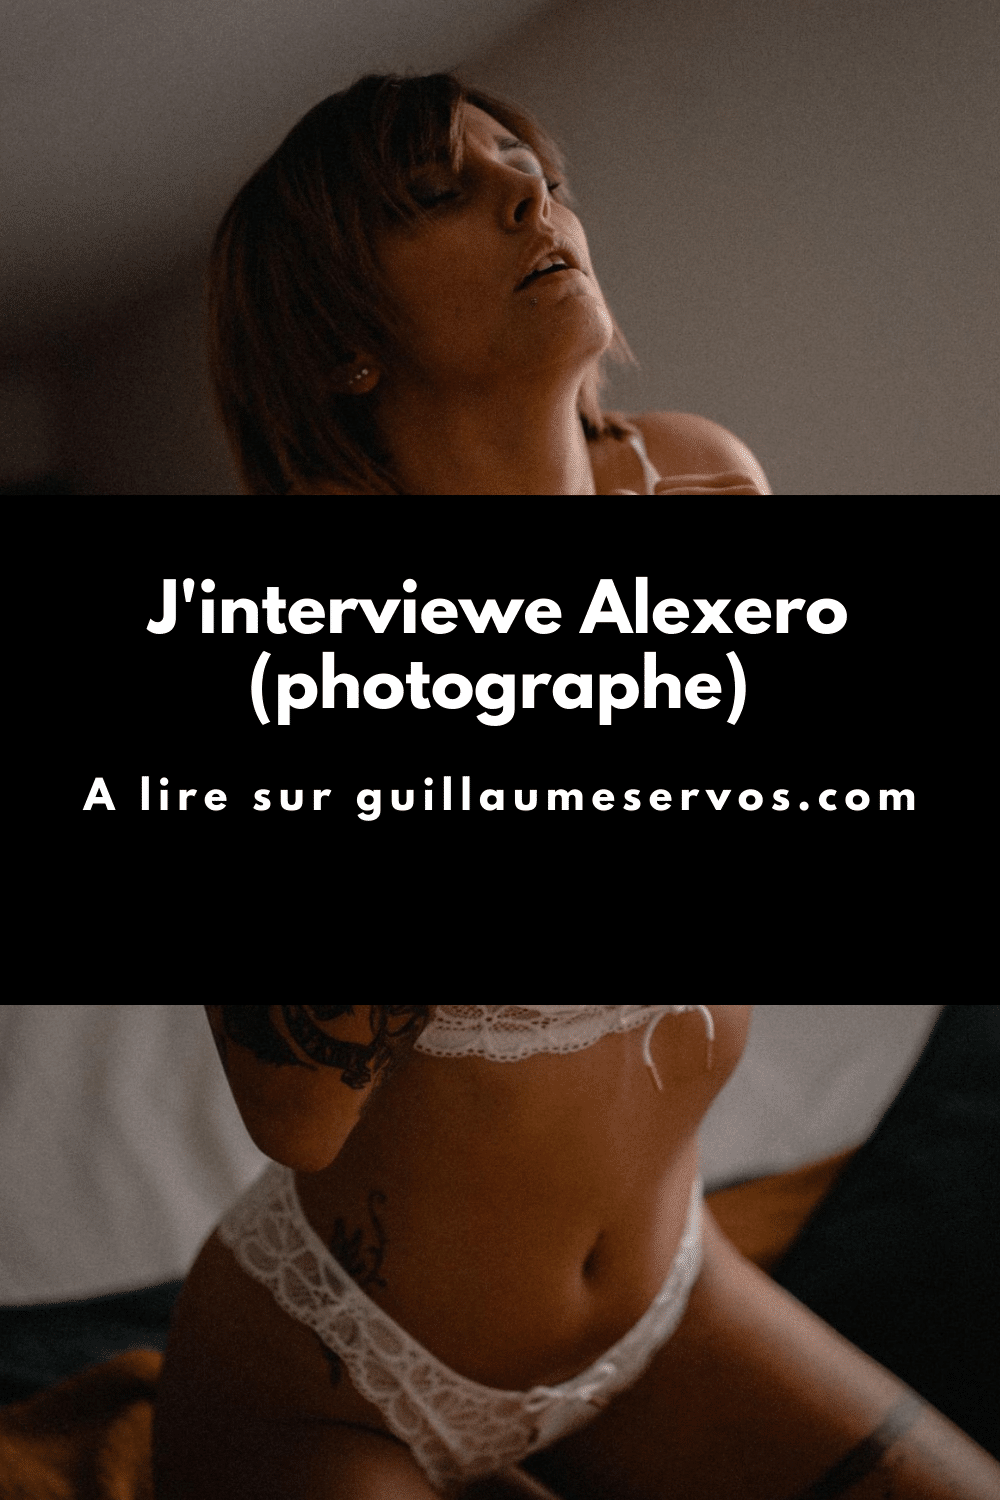 Découvre mon interview avec Alexero, photographe spécialisé dans l’érotique et dans l’intime. Son rapport à la photographie, aux réseaux sociaux et au voyage.